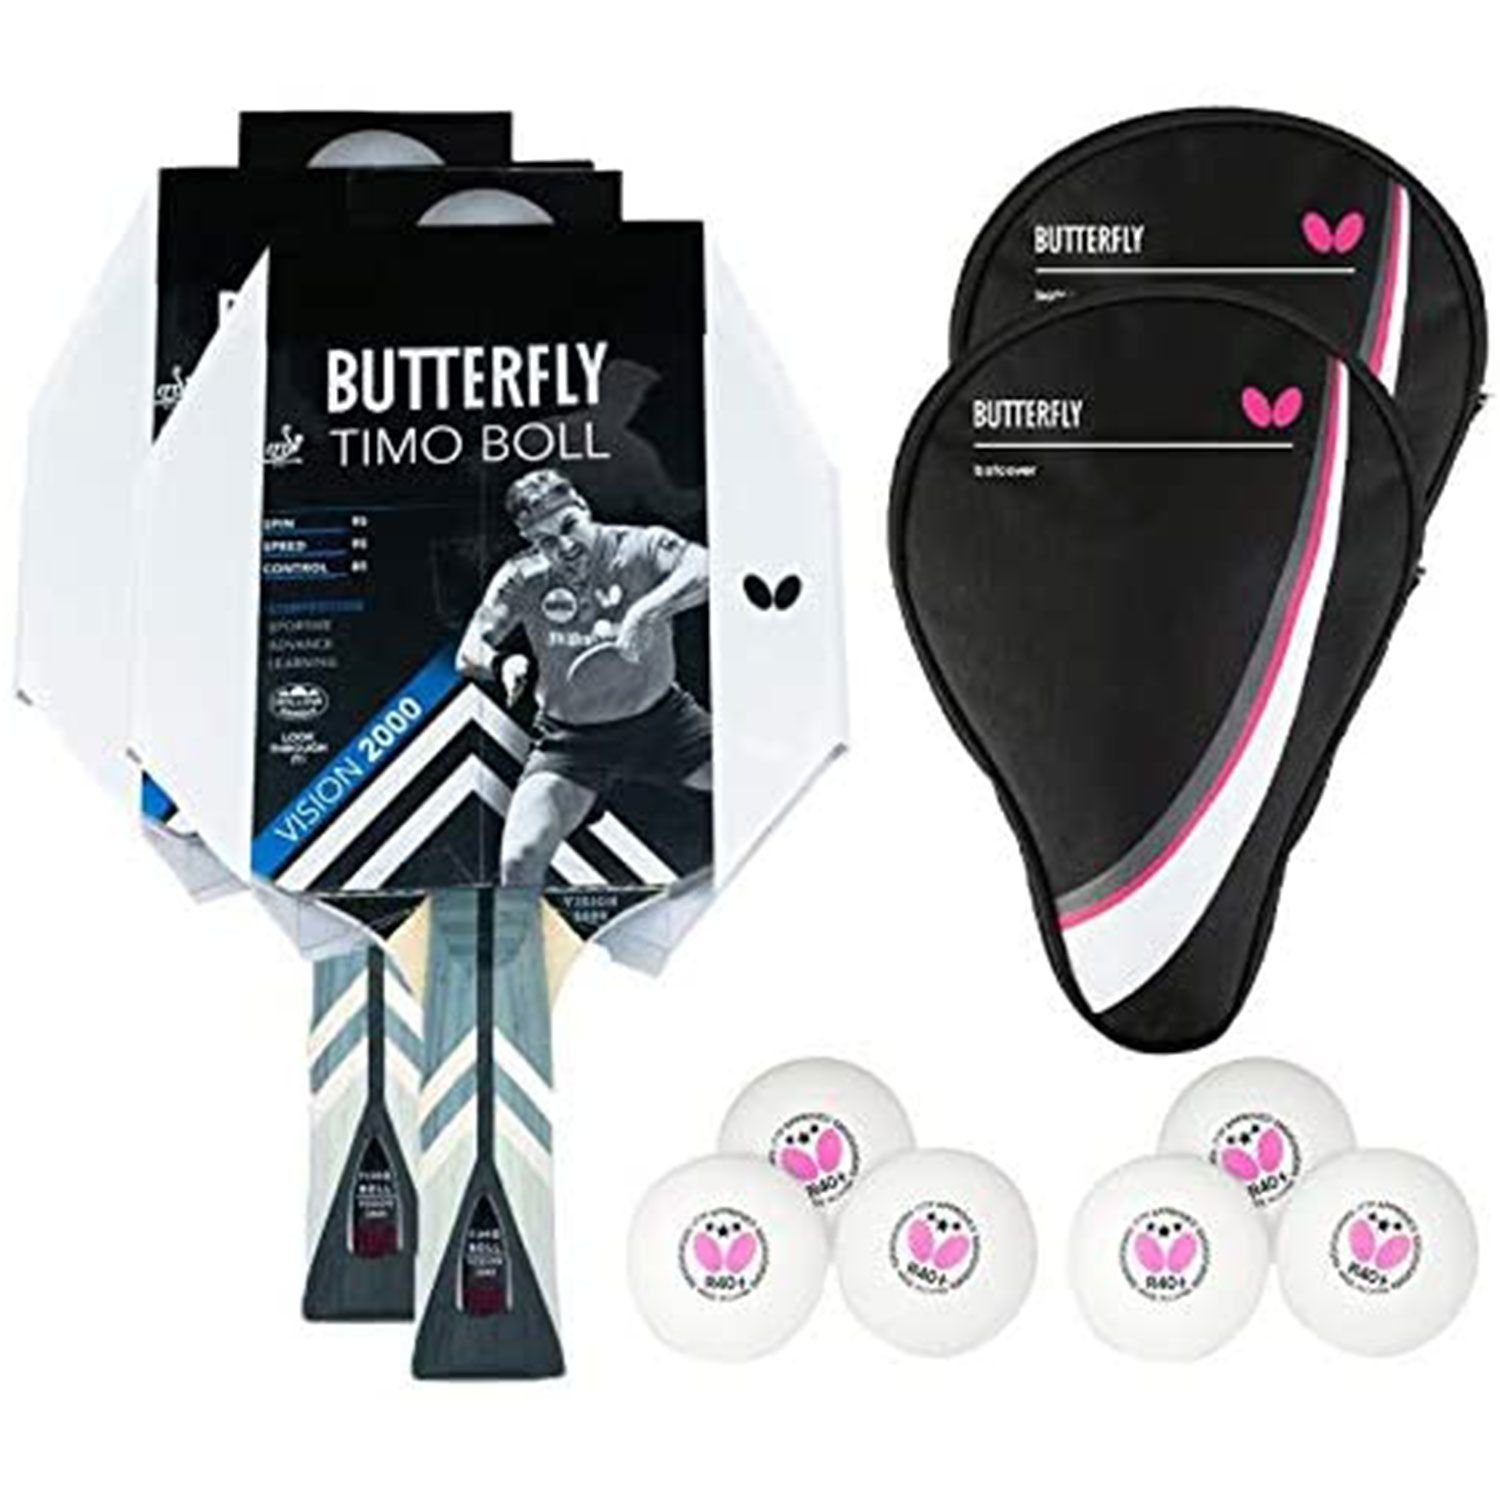 Butterfly Tischtennisschläger 2x Timo Boll Vision 2000 + 2x Drive Case 1 + Bälle, Tischtennis Schläger Set Tischtennisset Table Tennis Bat Racket